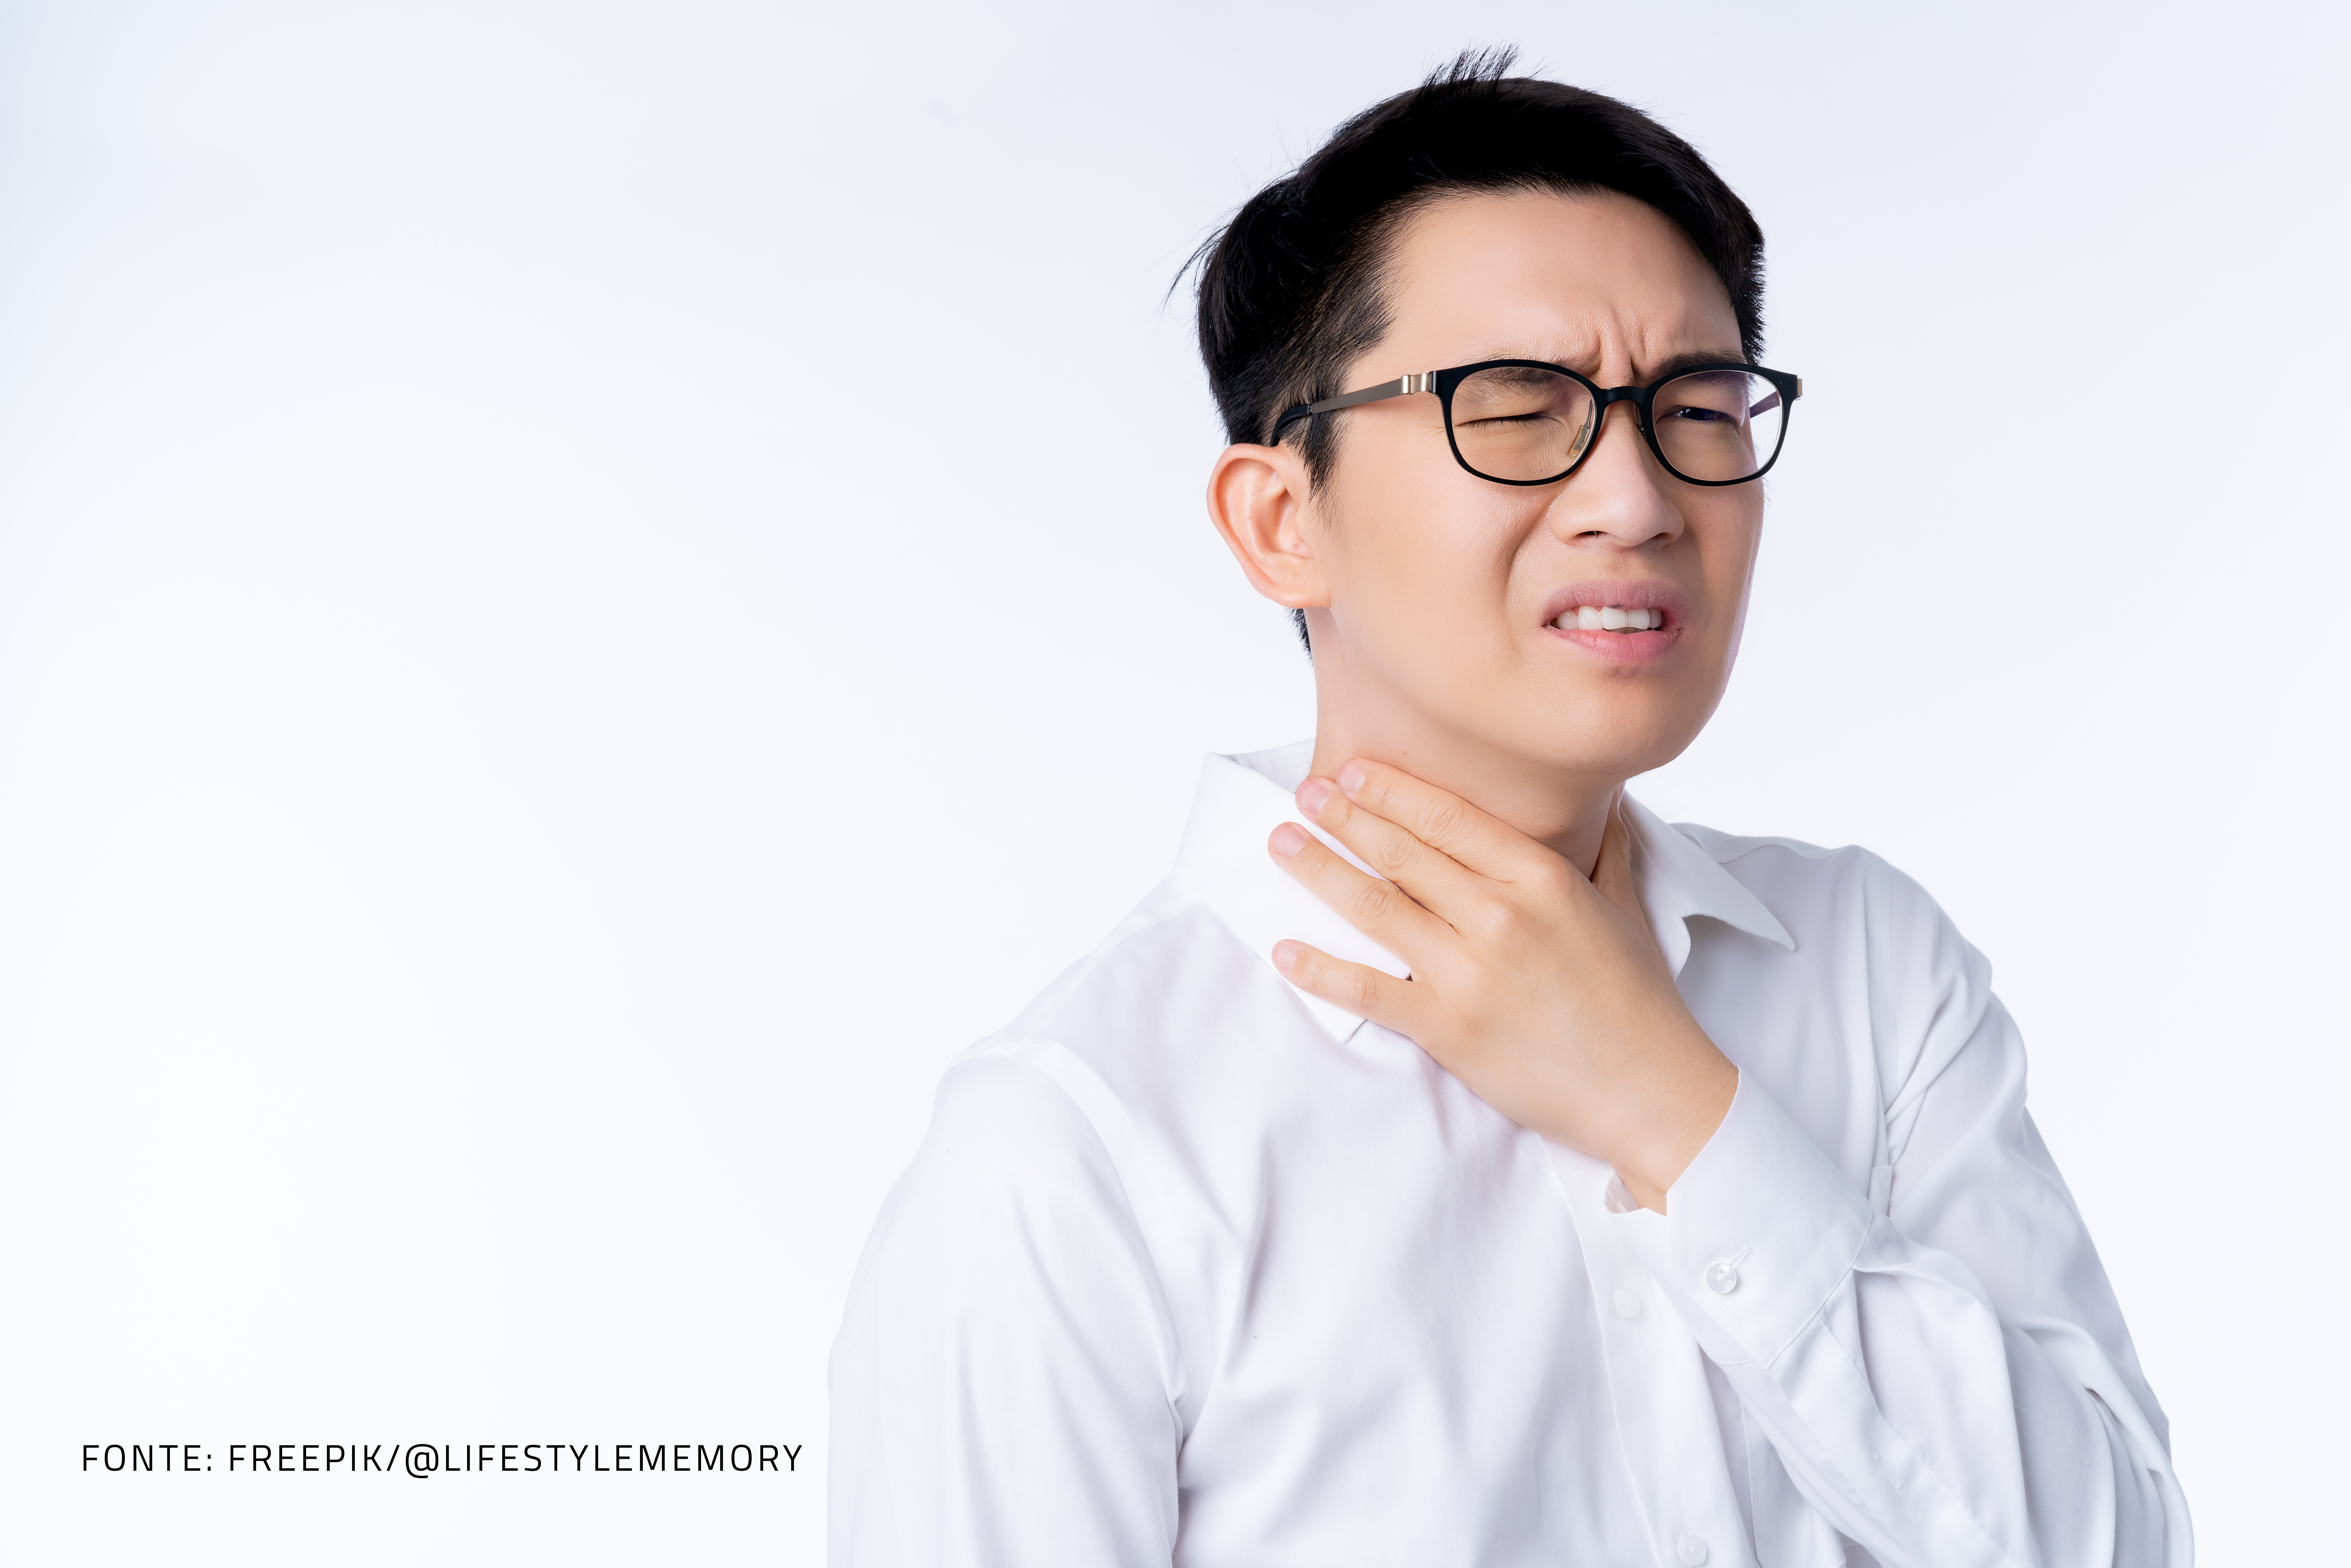 homem asiático com dor de garganta, usa camisa branca e óculos com armação preta.